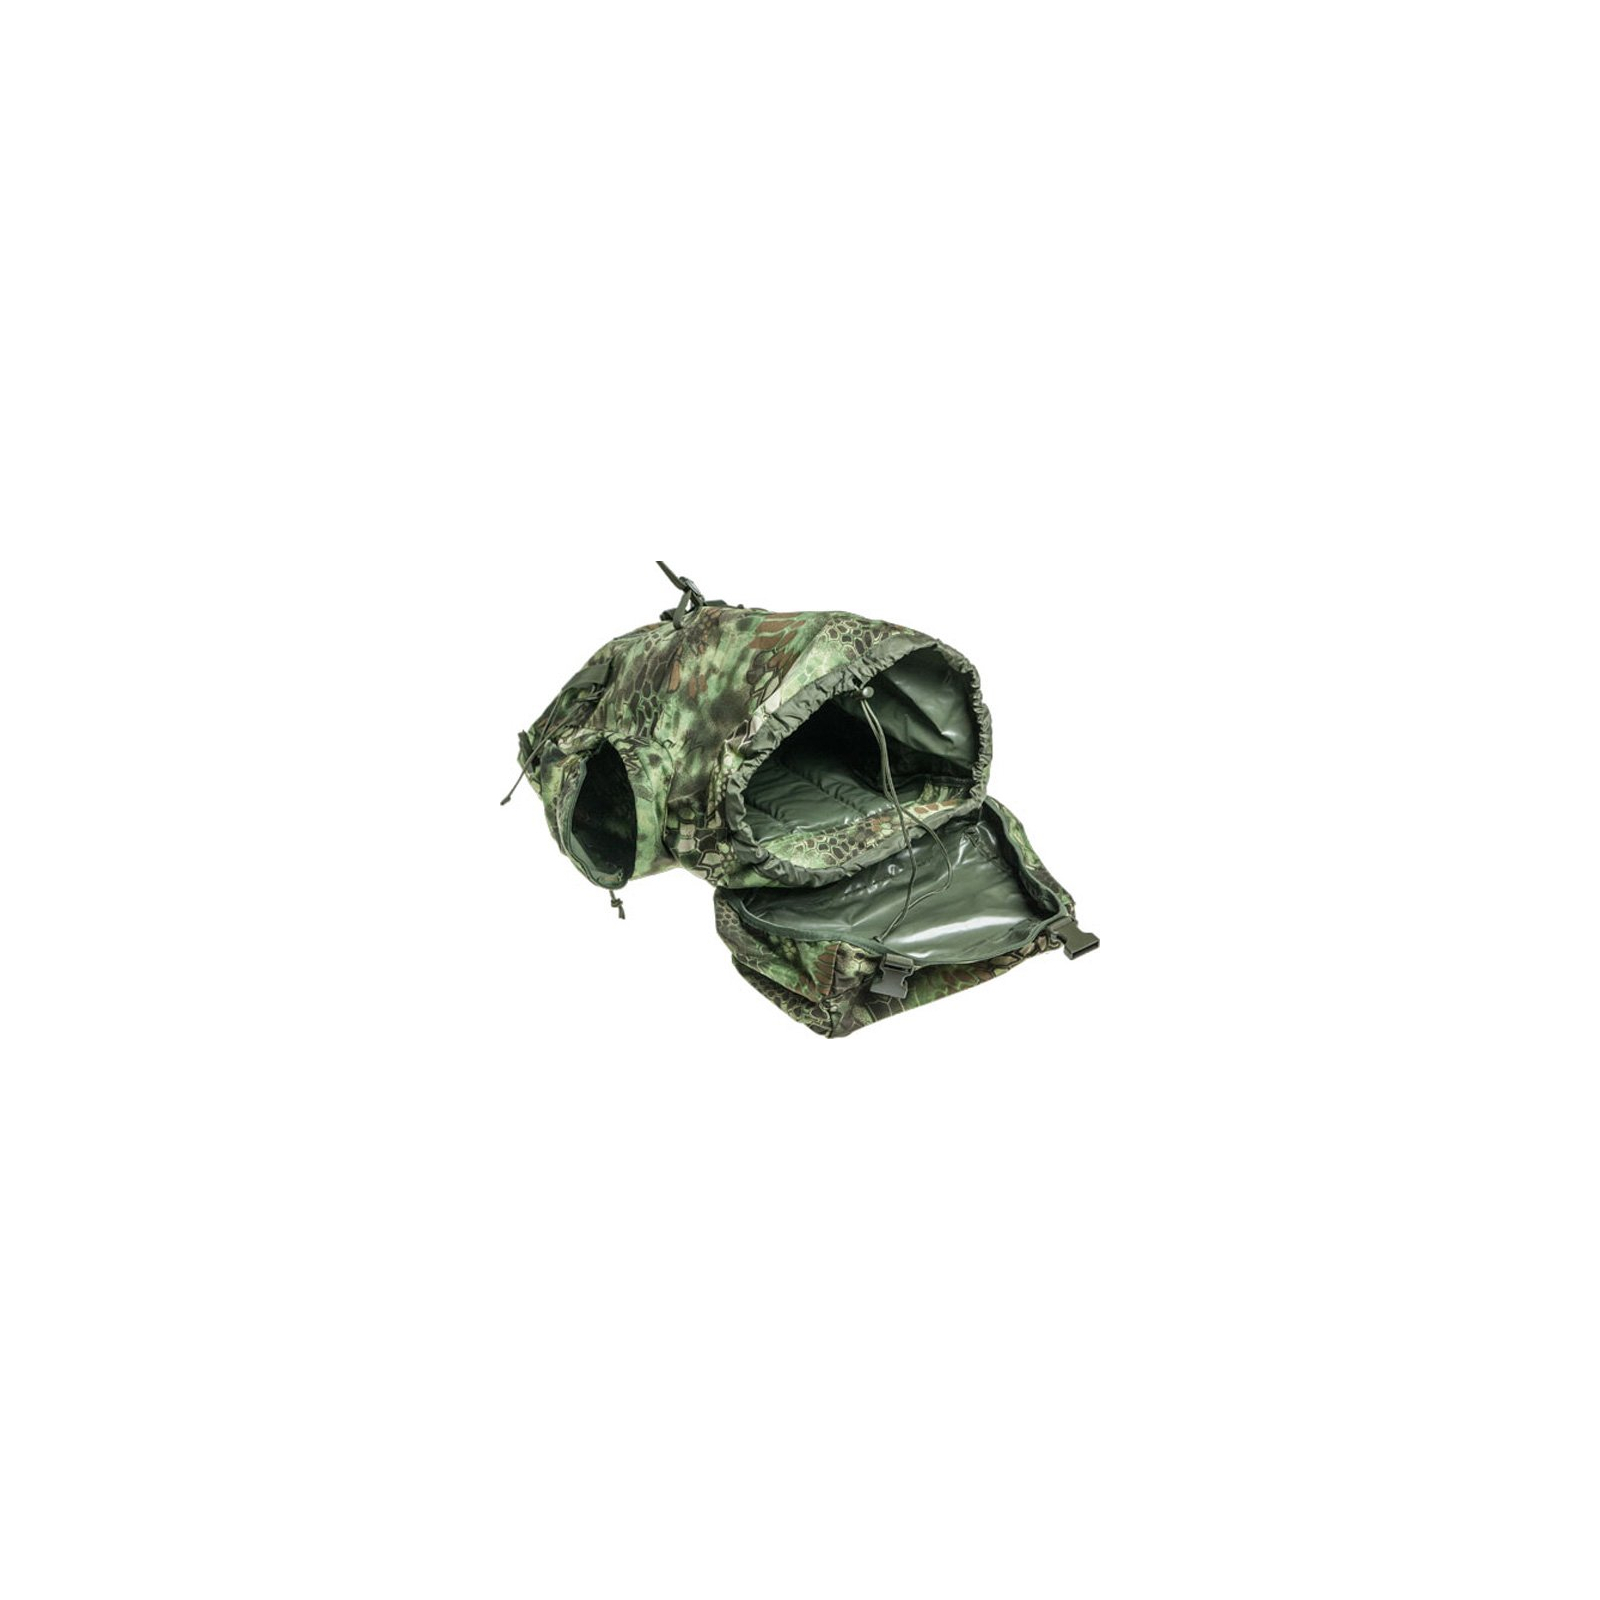 Рюкзак туристический Skif Tac тактический полевой 45 литров kryptek green (GB0075-KGR) изображение 3